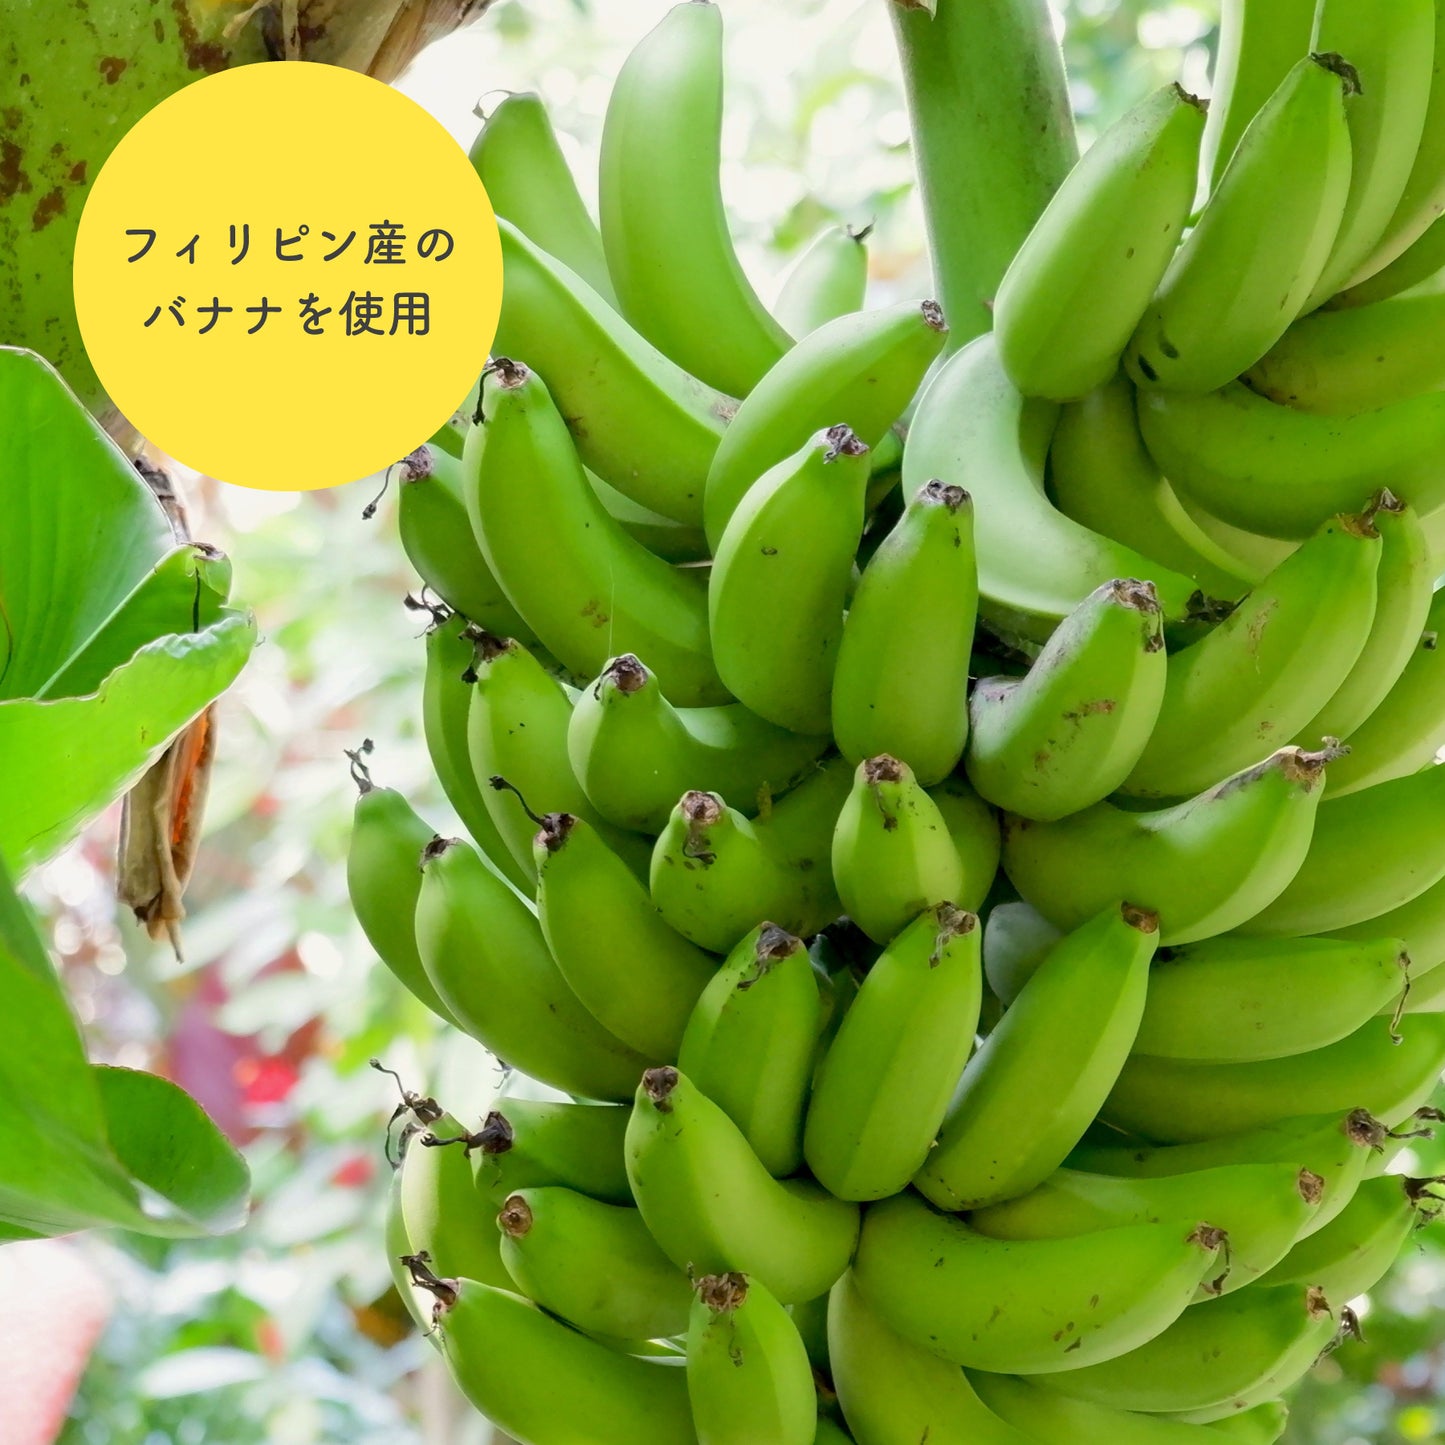 塩バナナチップス 150g 鹿児島錦江湾の塩 ココナッツオイル使用